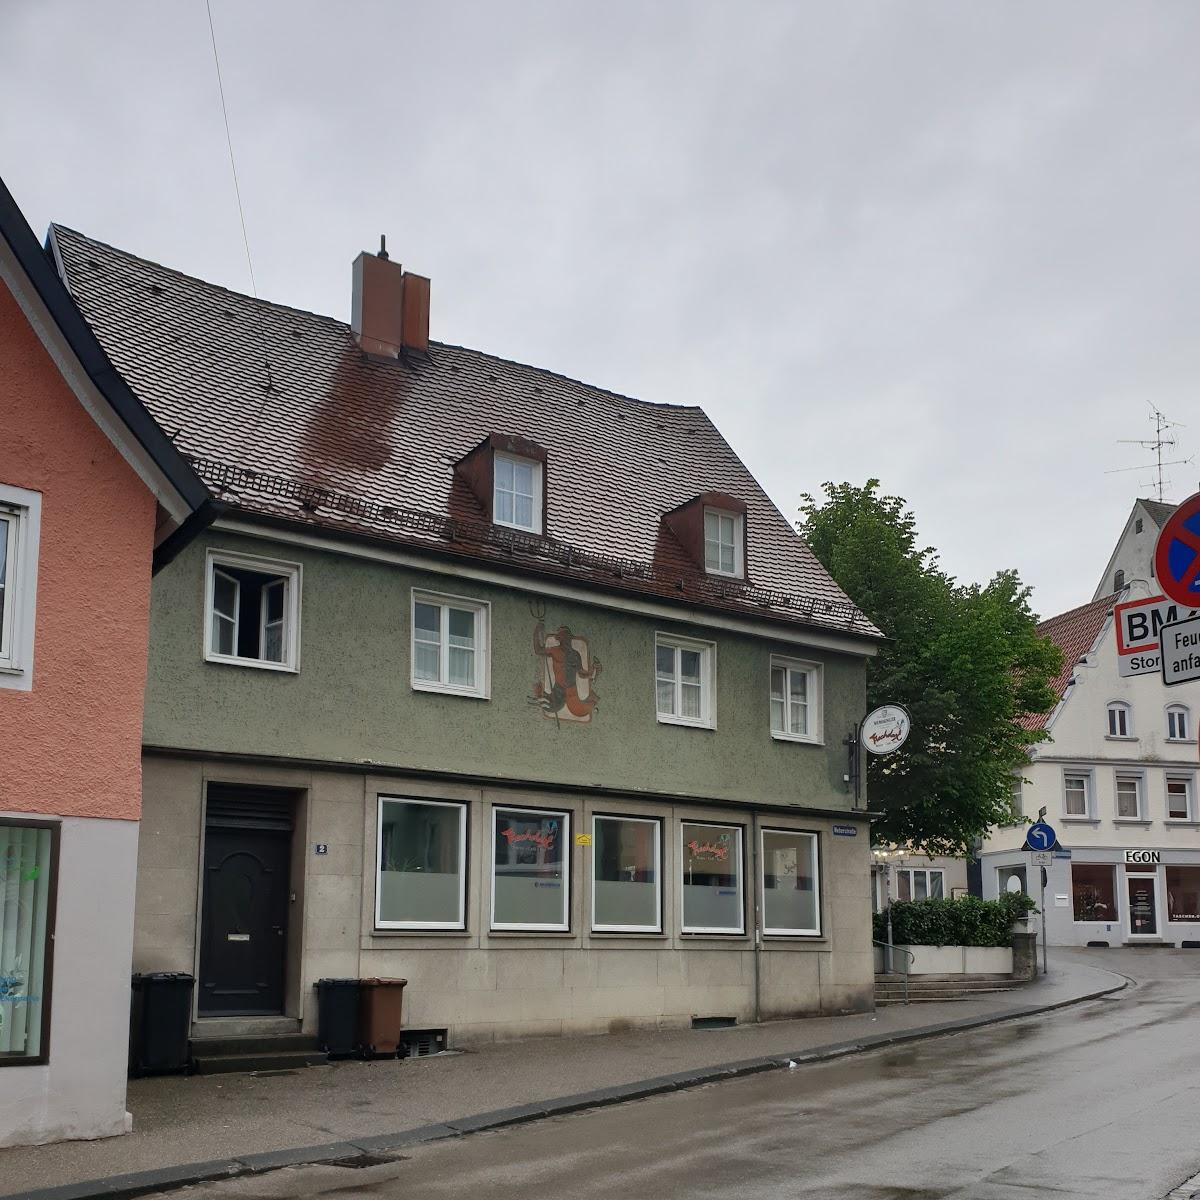 Restaurant "Bistro Frechdax" in Memmingen